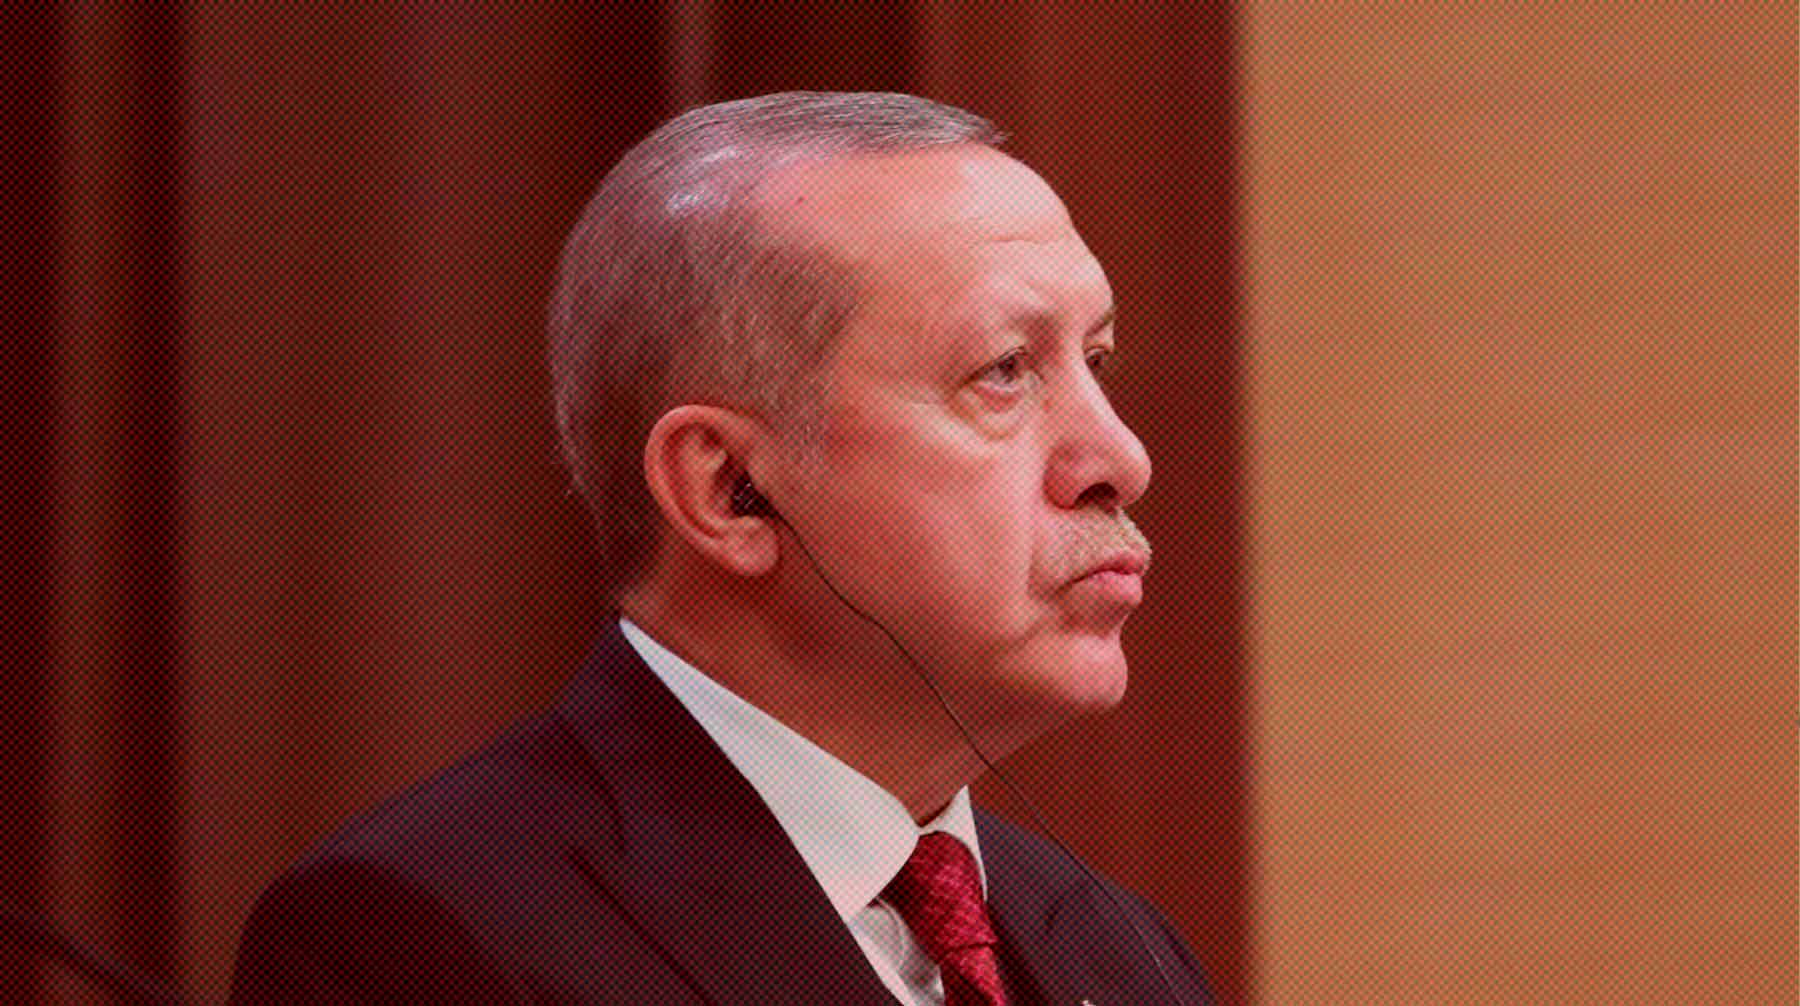 Действующий турецкий лидер 28 мая победил на выборах президента и сохранил свой пост Фото: Global Look Press / Kremlin Pool